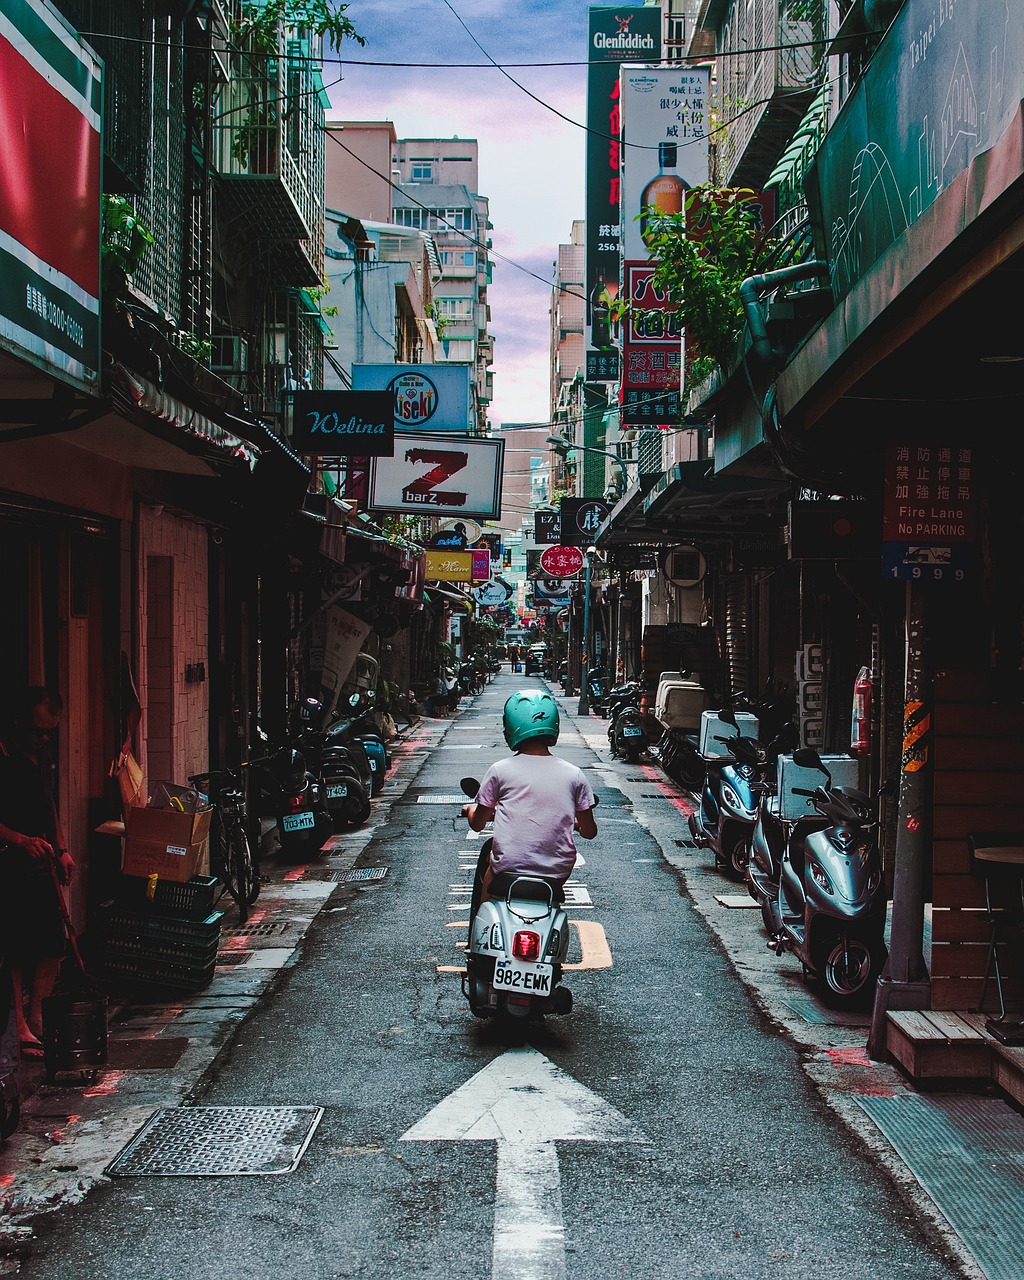 Taipei Taiwan